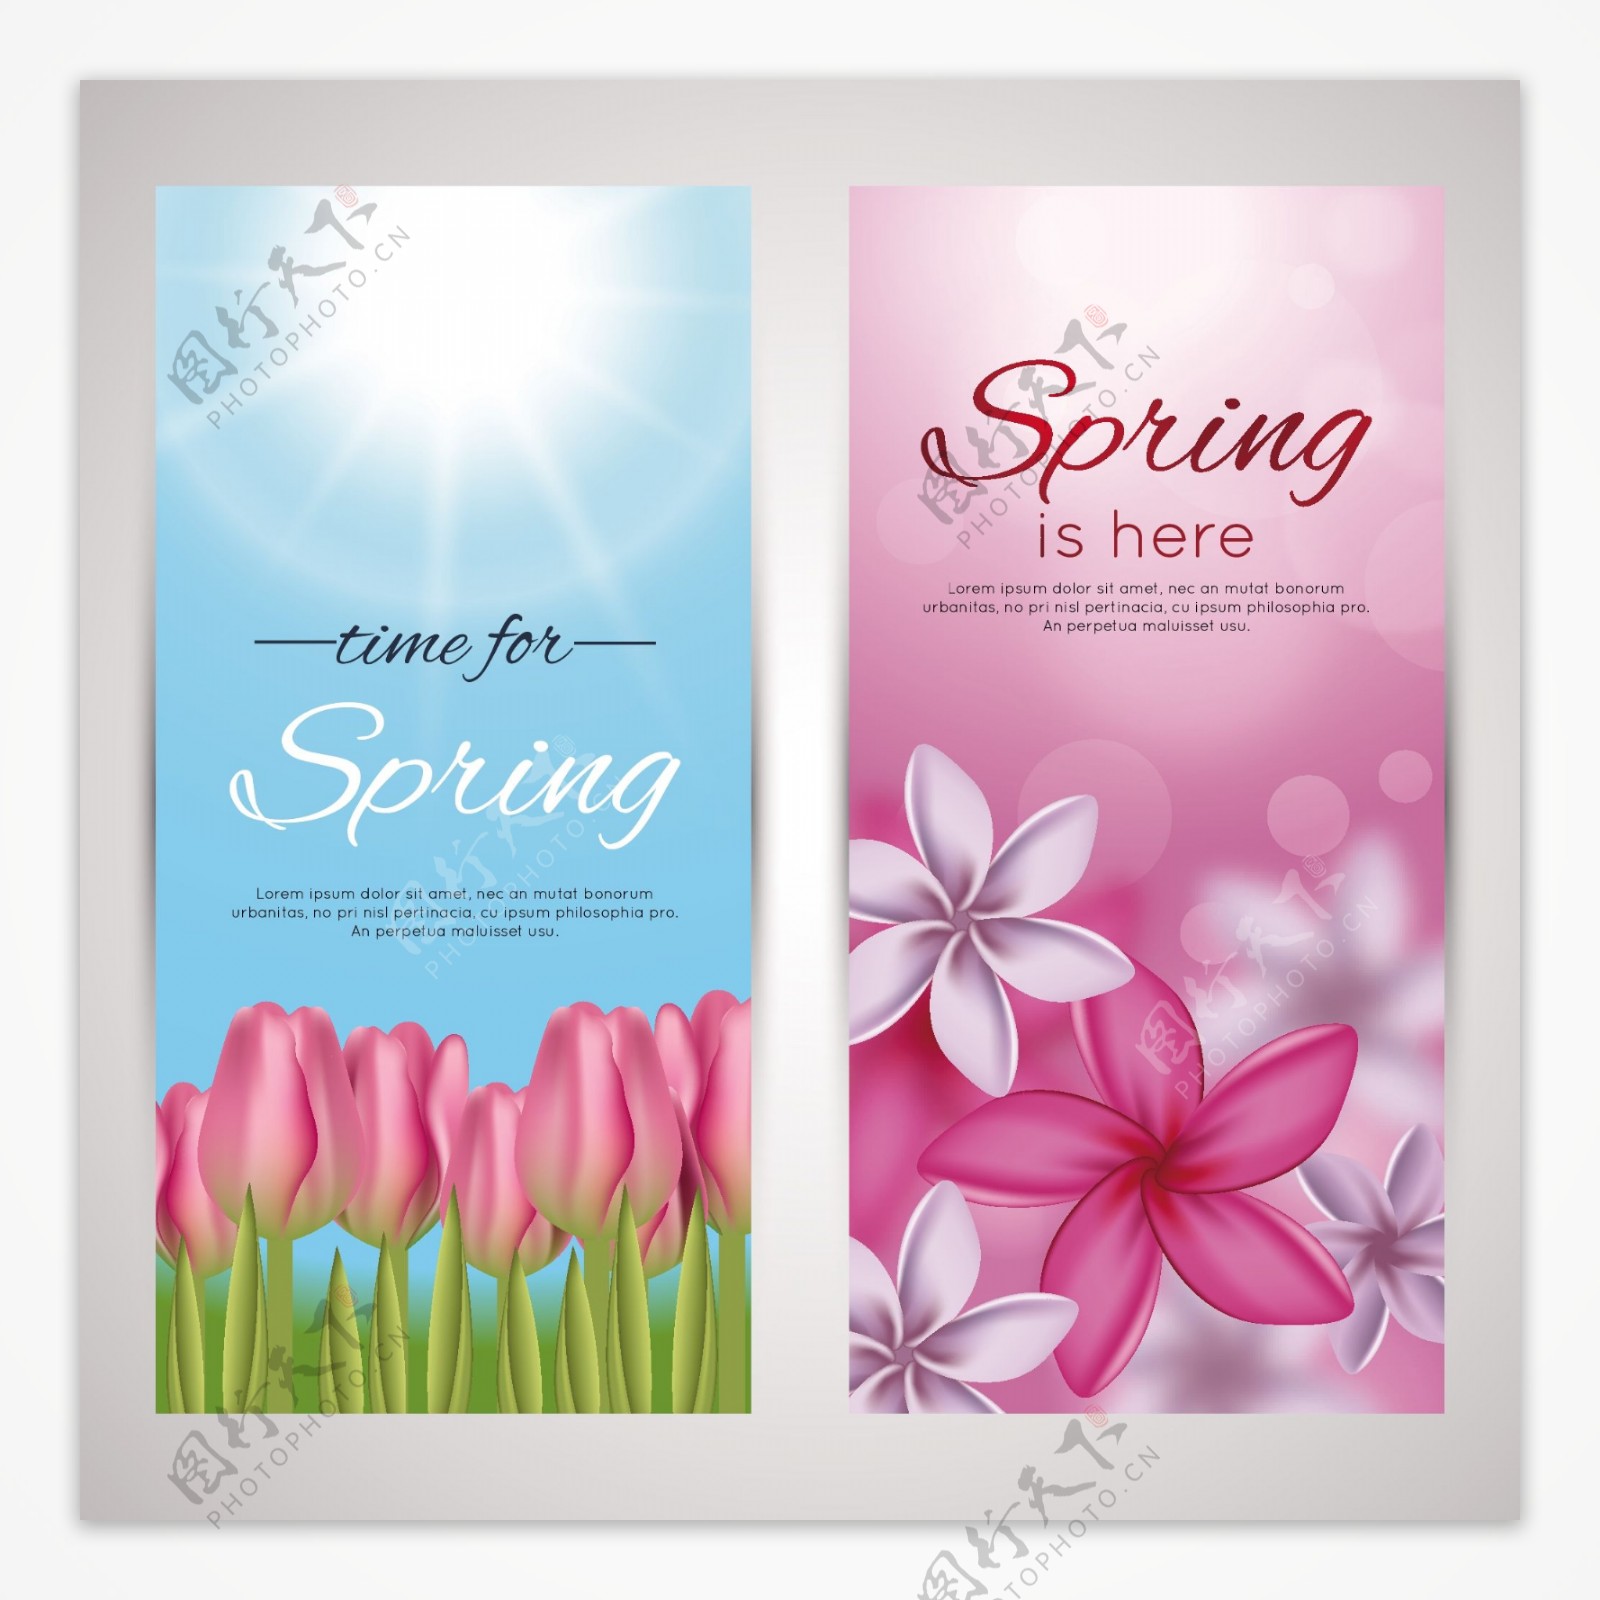 唯美春天花朵促销海报设计